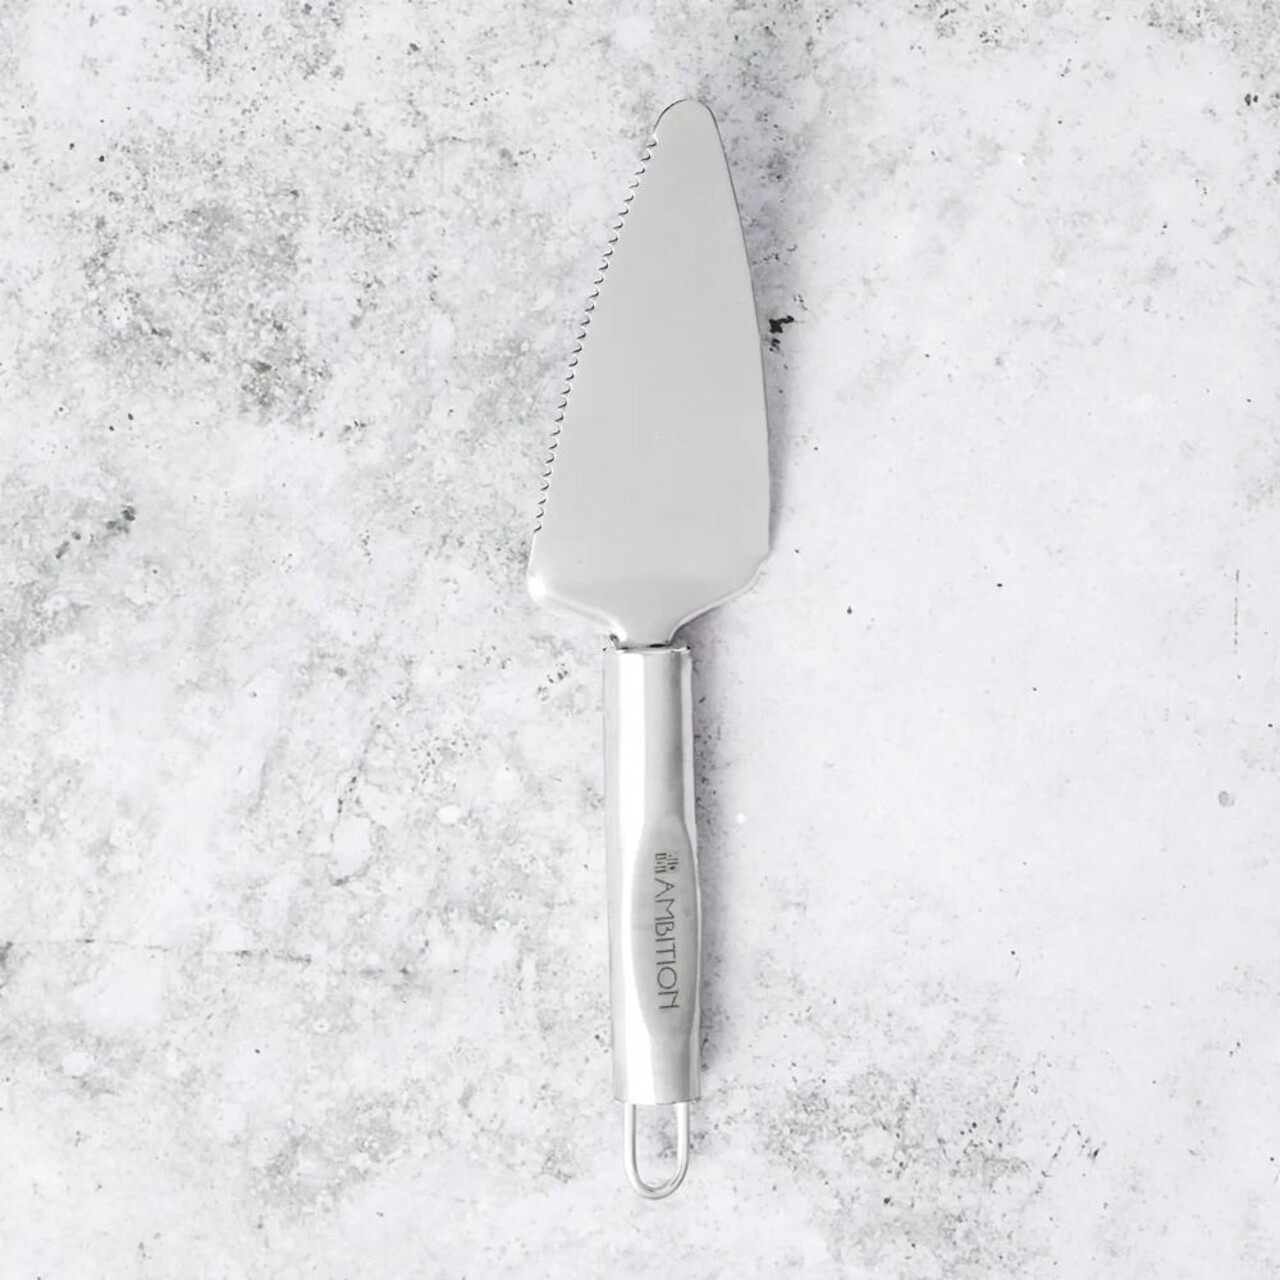 Ivy torta spatulák, Ambition, 23,5 cm, rozsdamentes acél